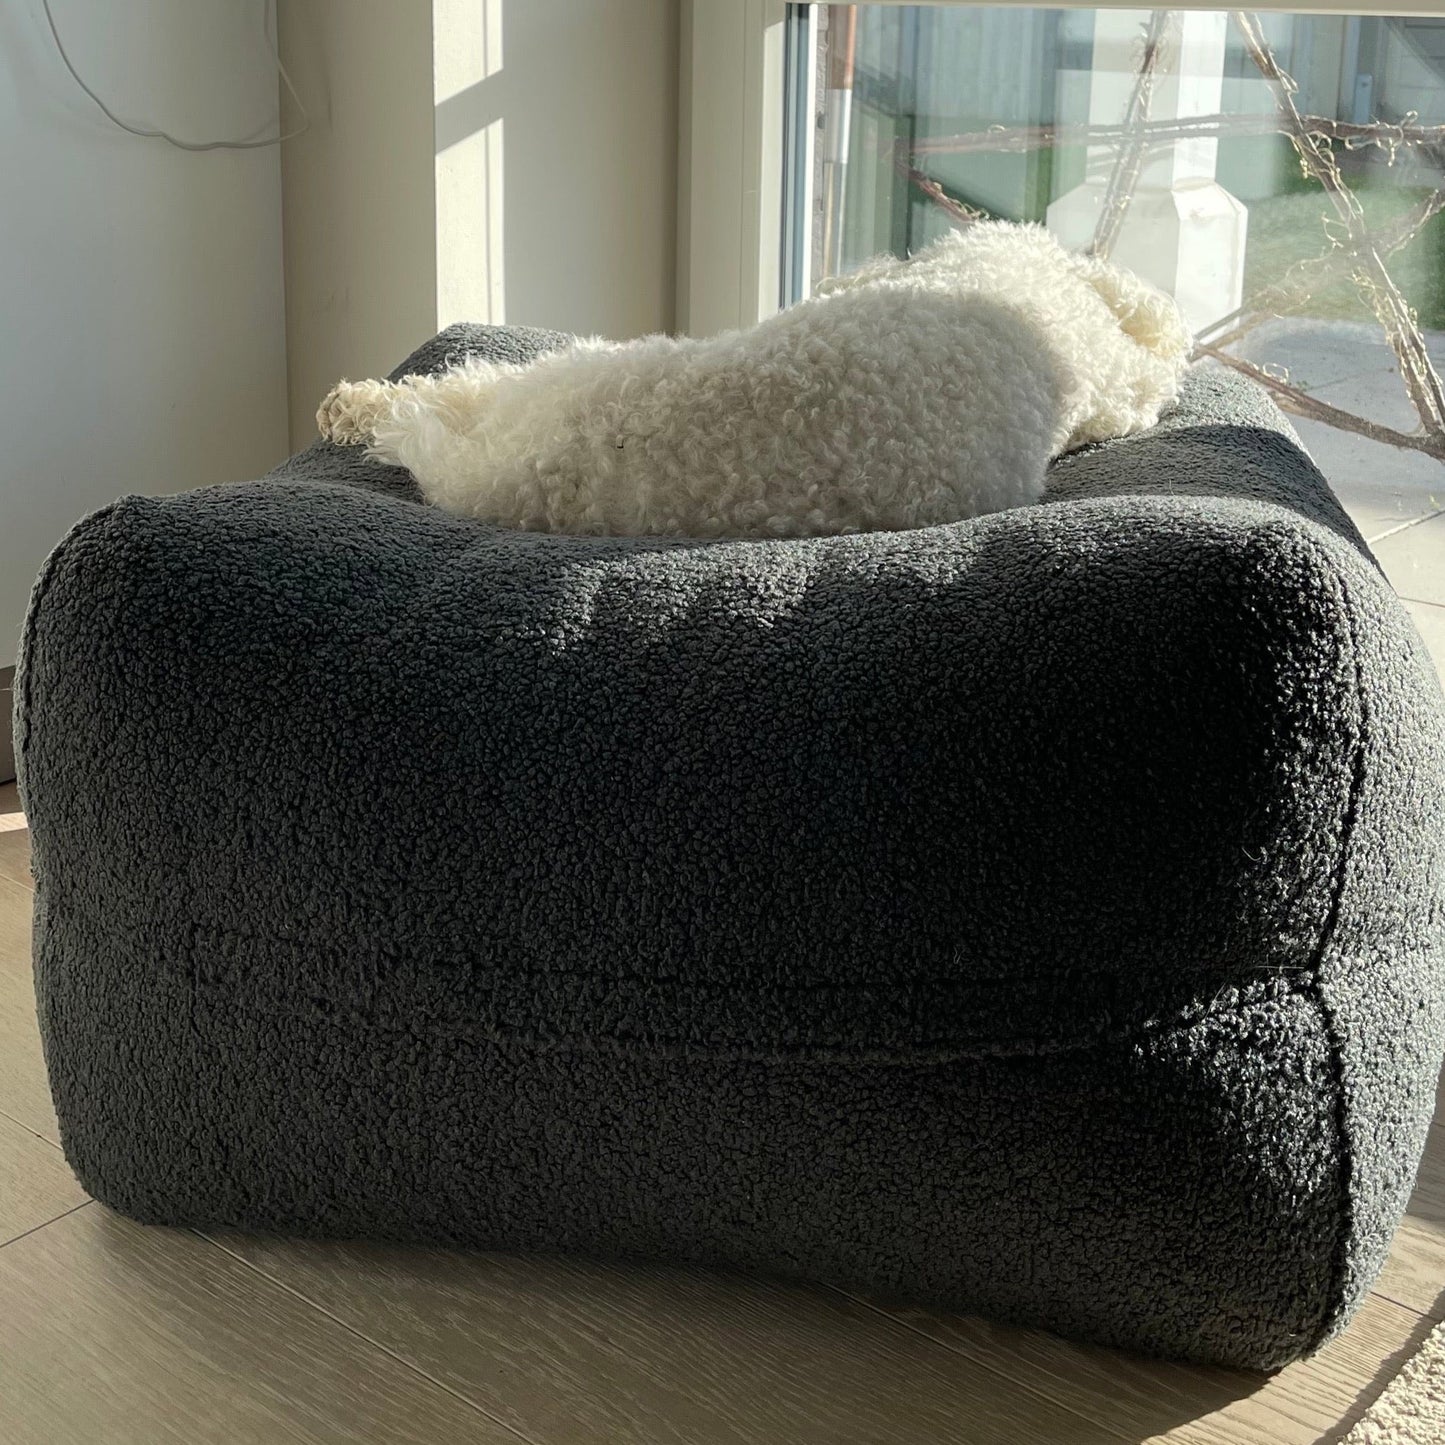 Dozzy Dog Bed – Teddystoff Anthrazit